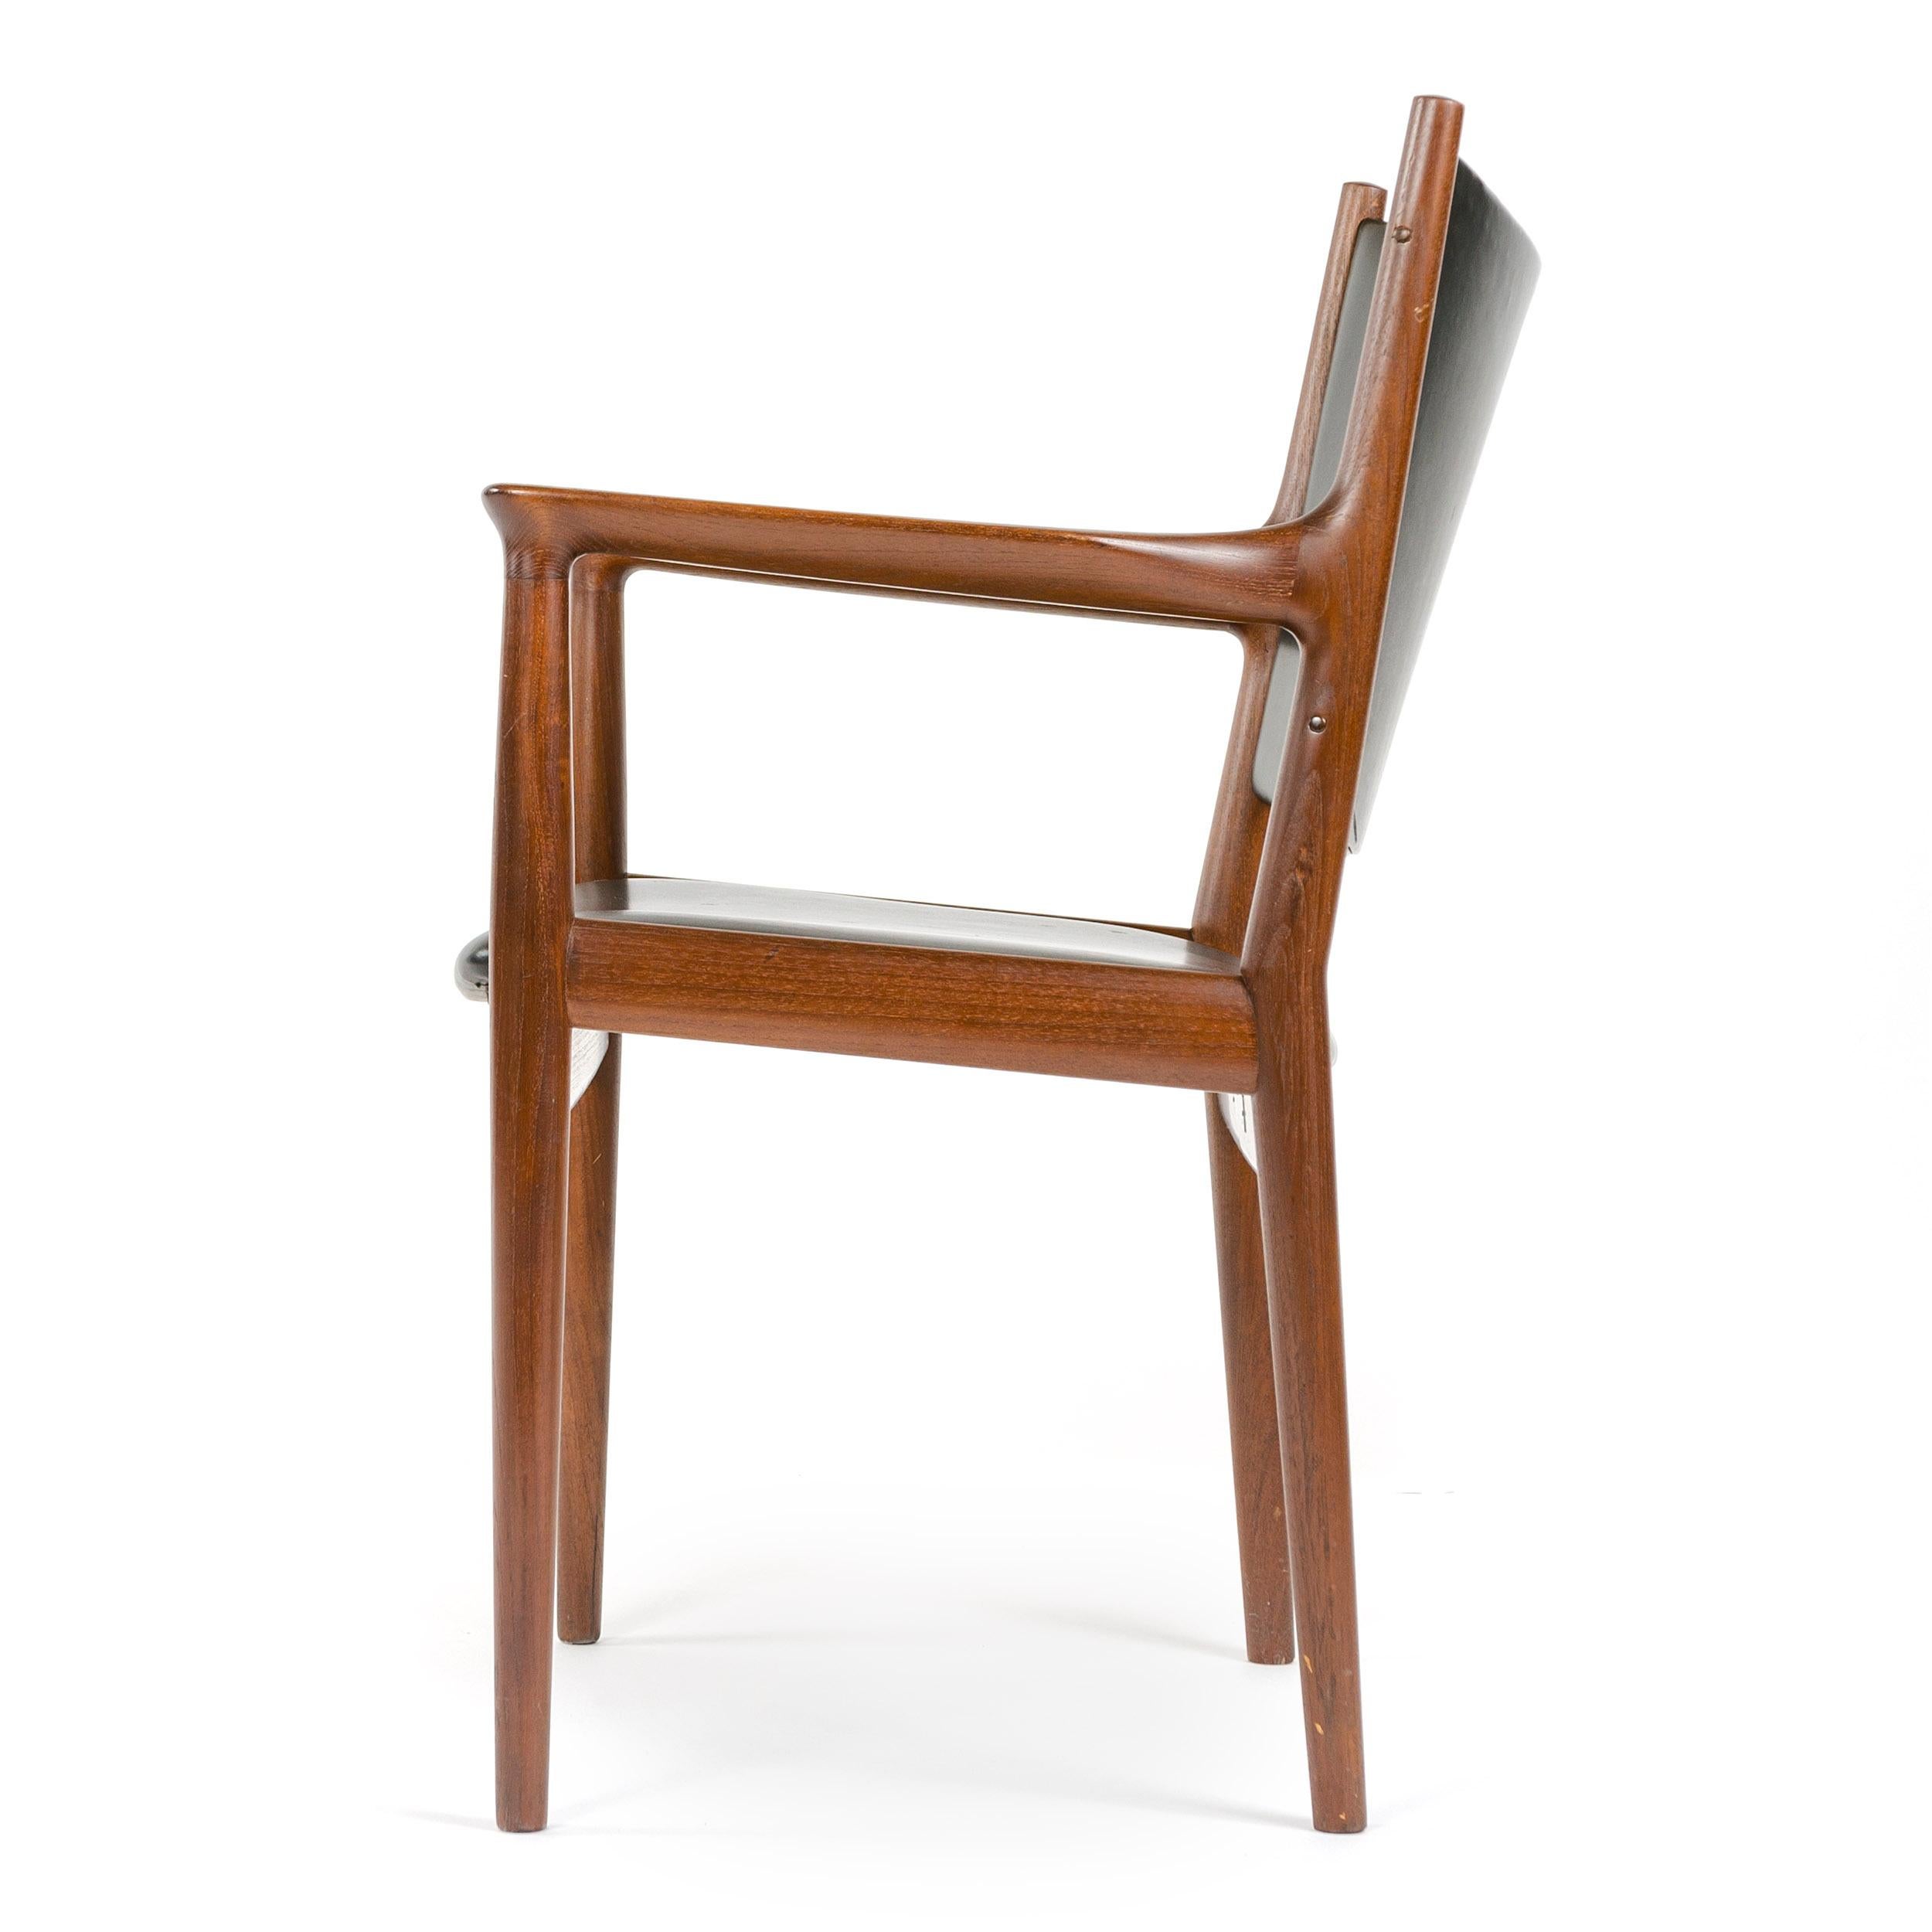 Mid-20th Century 1960s Danish Teak Dining Chair by Hans J. Wegner for Johannes Hansen For Sale